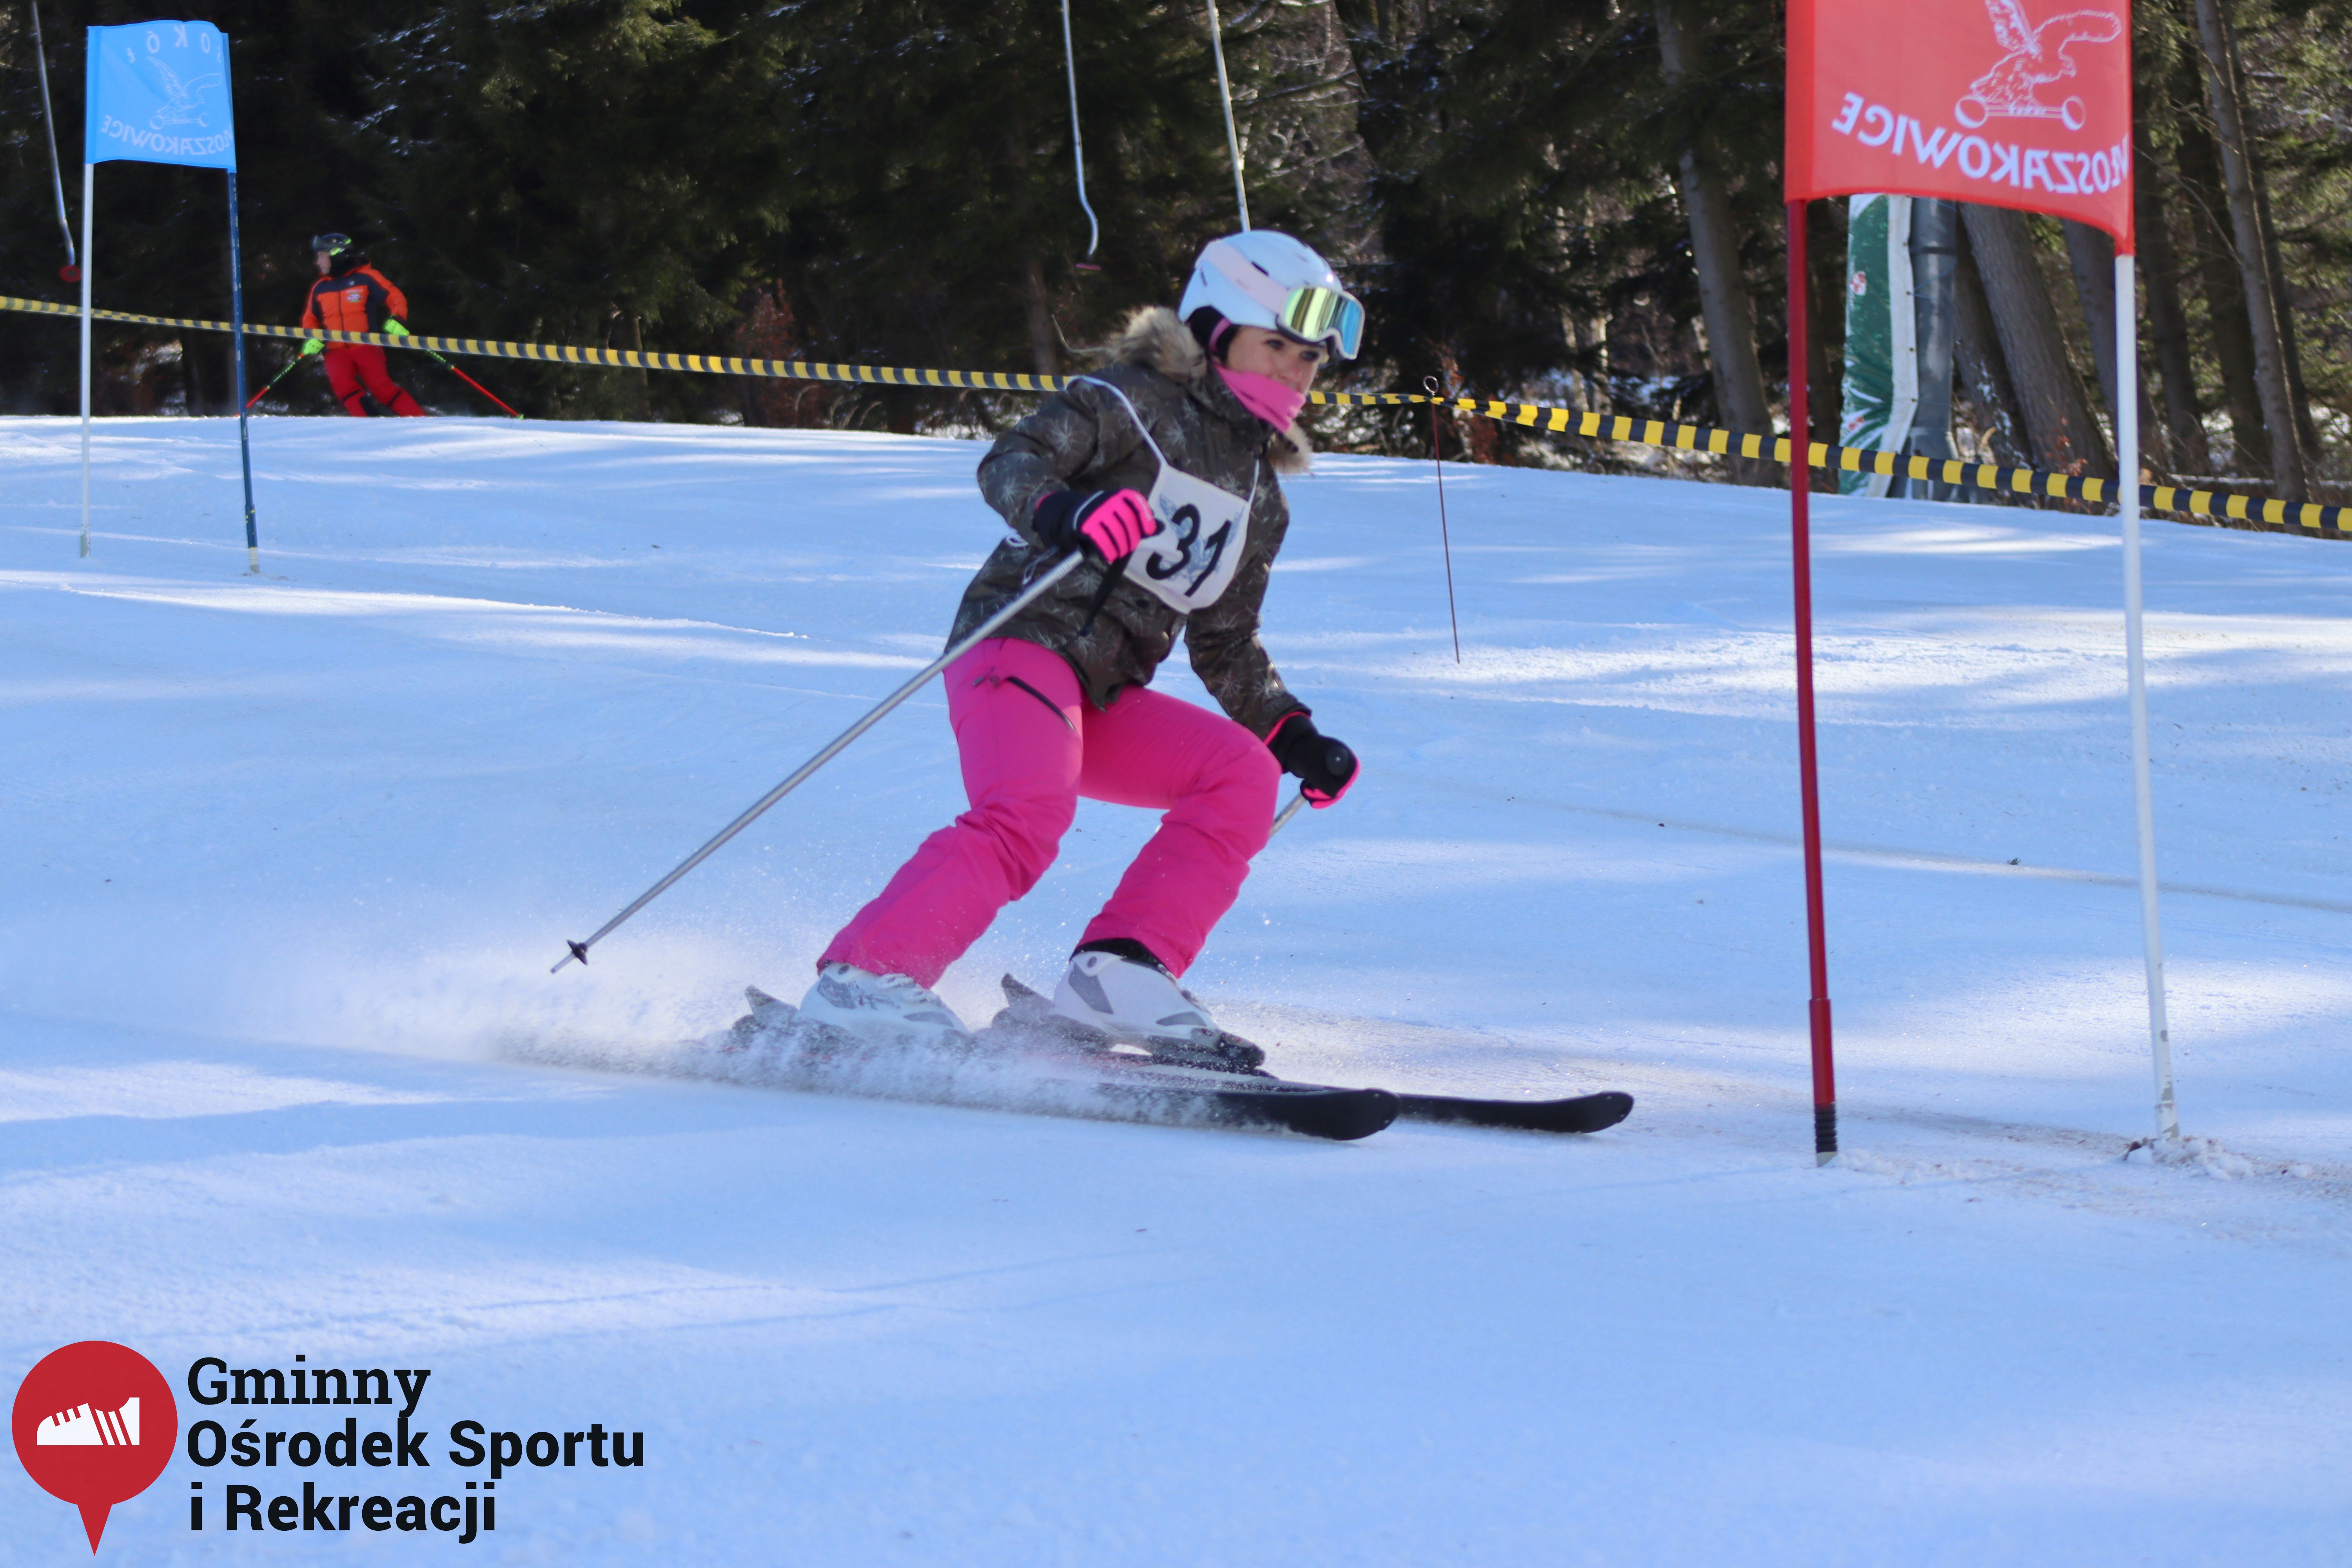 2022.02.12 - 18. Mistrzostwa Gminy Woszakowice w narciarstwie065.jpg - 1,51 MB